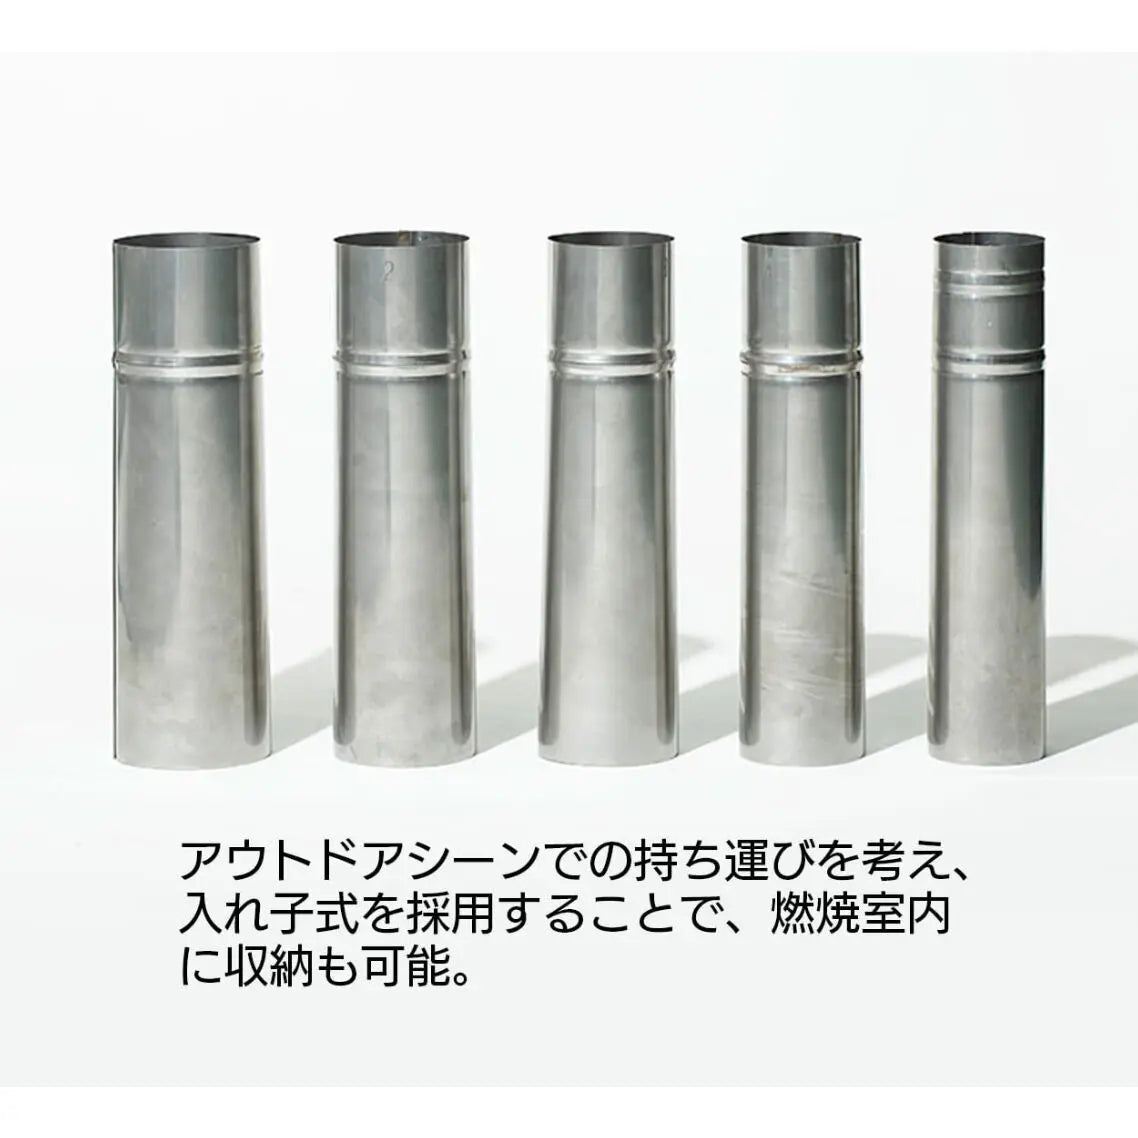 国産薪ストーブ「tanzawa２」用 交換部品 煙突 オーバーレイチムニー（5本セット）